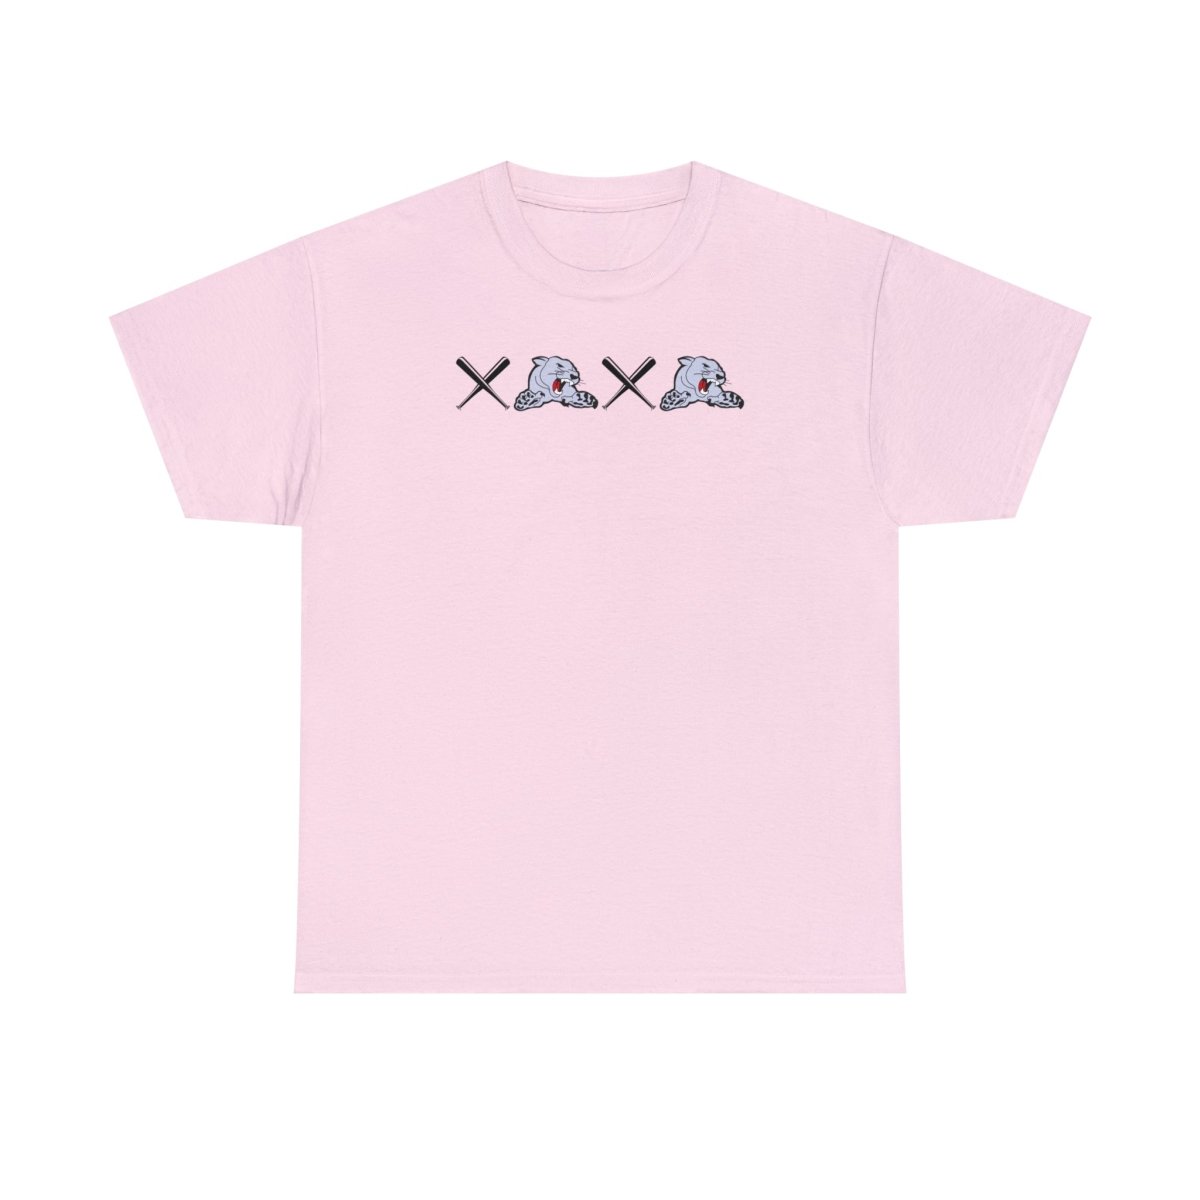 Cougar XO XO Cotton T-shirt